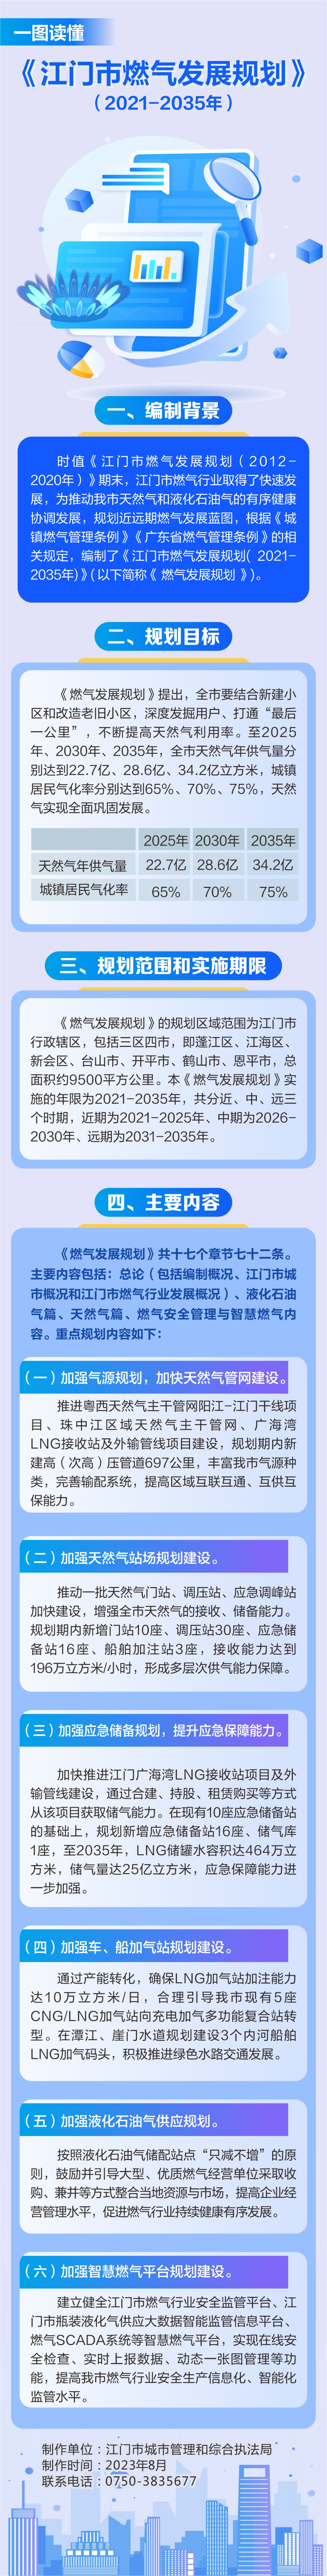 江门市燃气发展规划（2021-2035年）.jpg